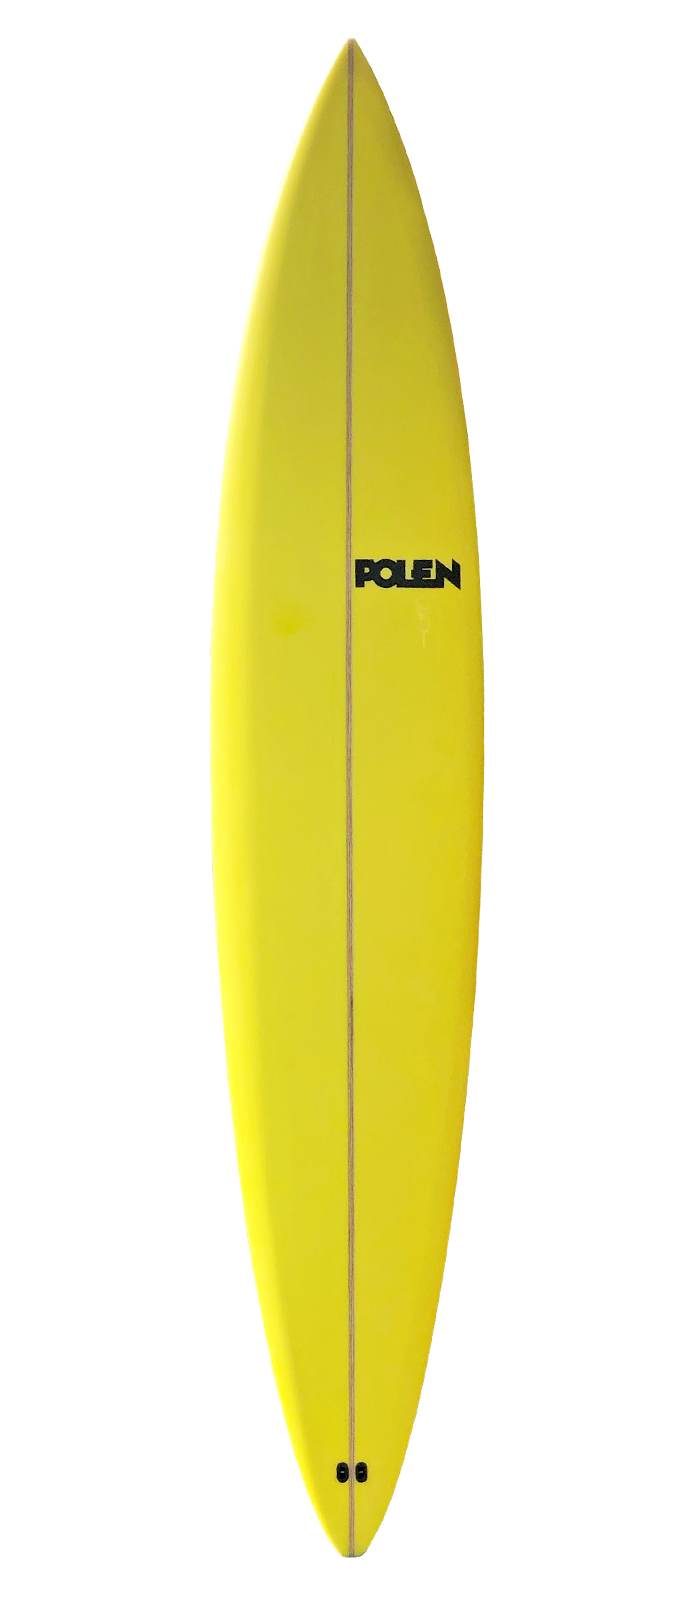 HAND GRENADE surfboard model bottom